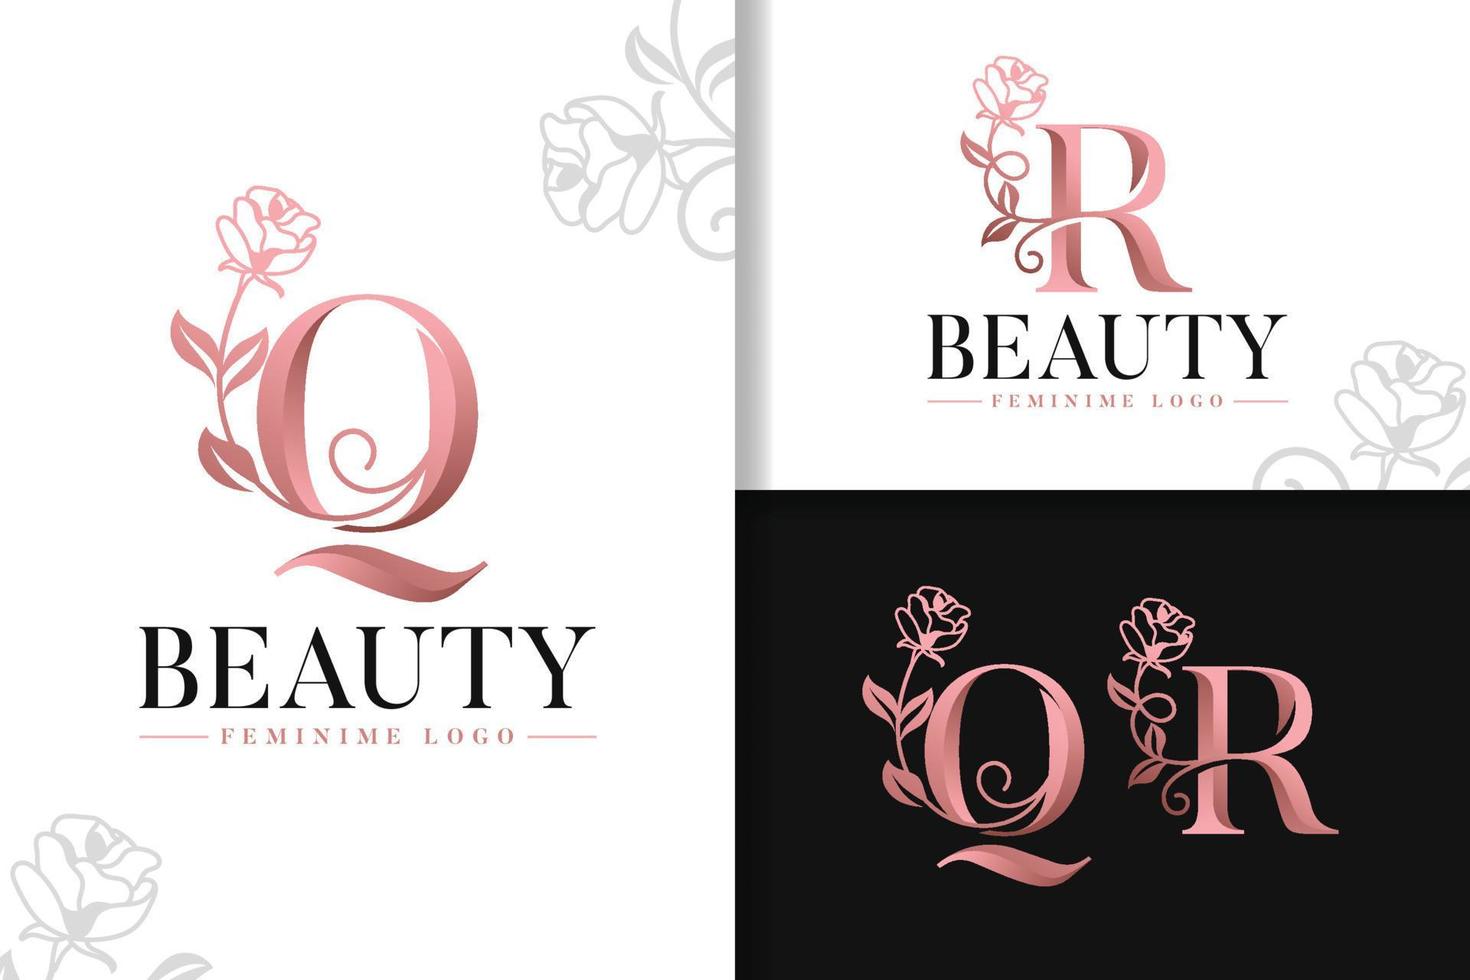 monograma feminino logotipo de ouro rosa letra q e r com flores vetor